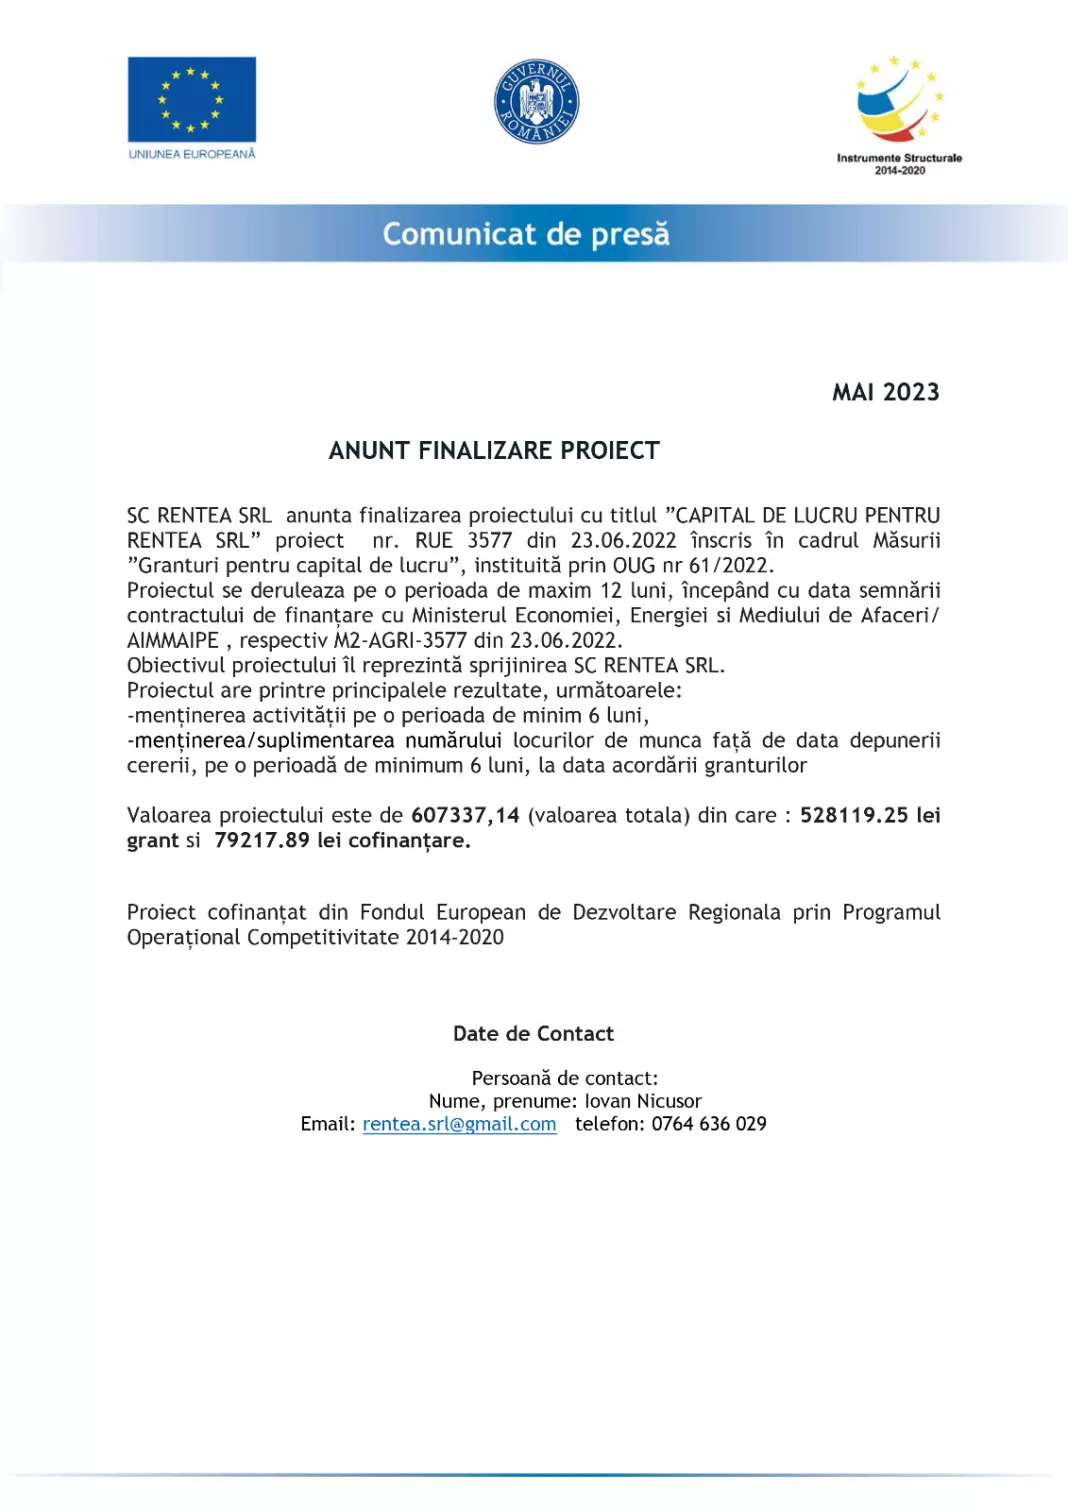 SC RENTEA SRL anunţă finalizarea proiectului cu titlul ”CAPITAL DE LUCRU PENTRU RENTEA SRL”